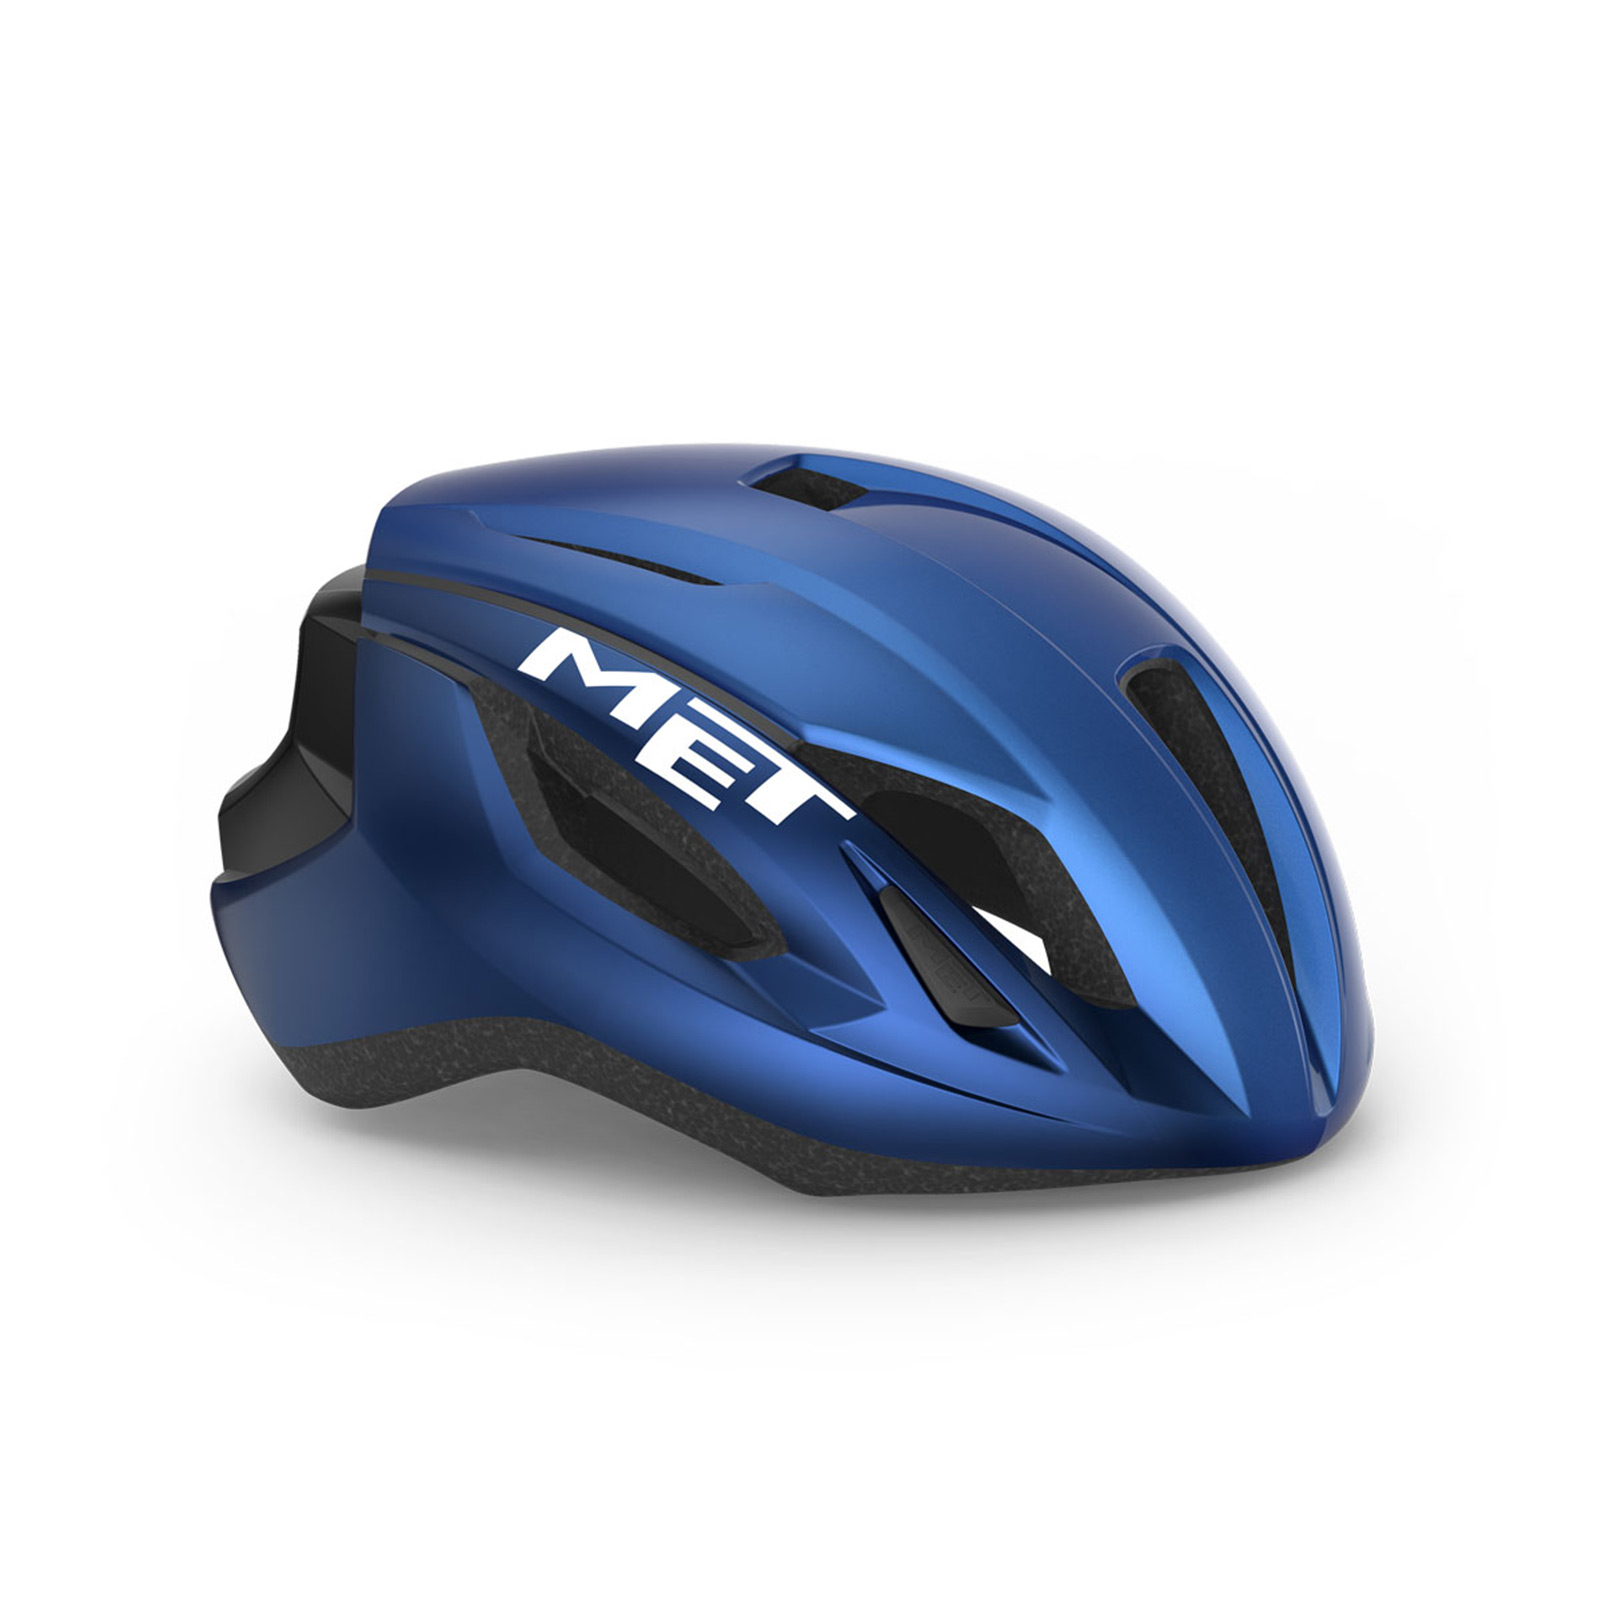 met-strale-road-cycling-helmet-M107BL2